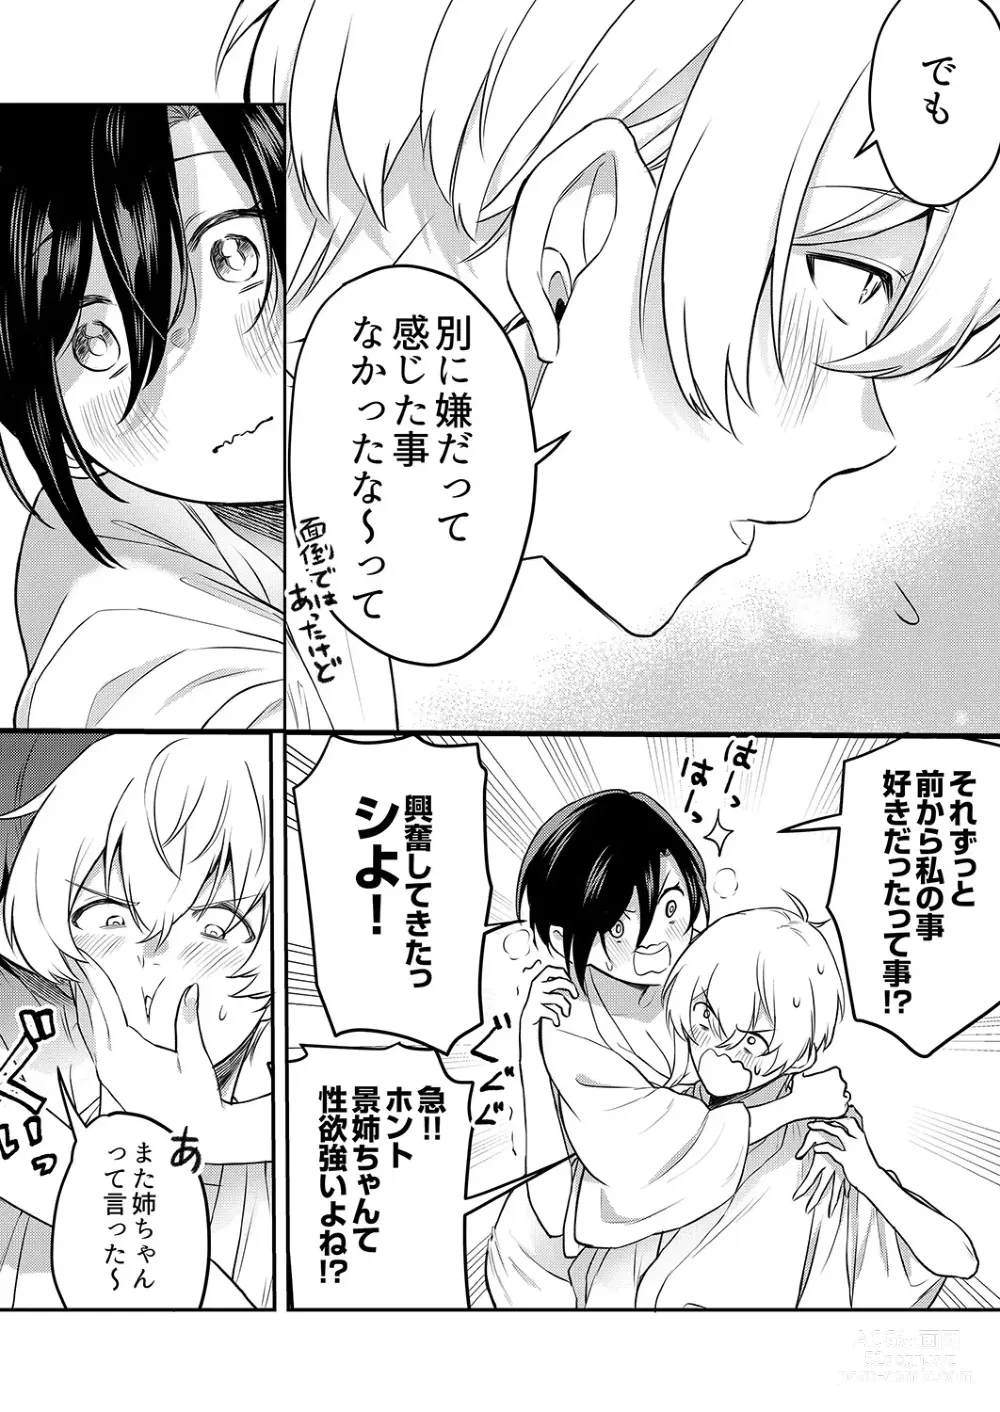 Page 128 of manga Hageshii SEX de Motokare o Wasuresasete ~ Yotta Furi shite Izanau Ane